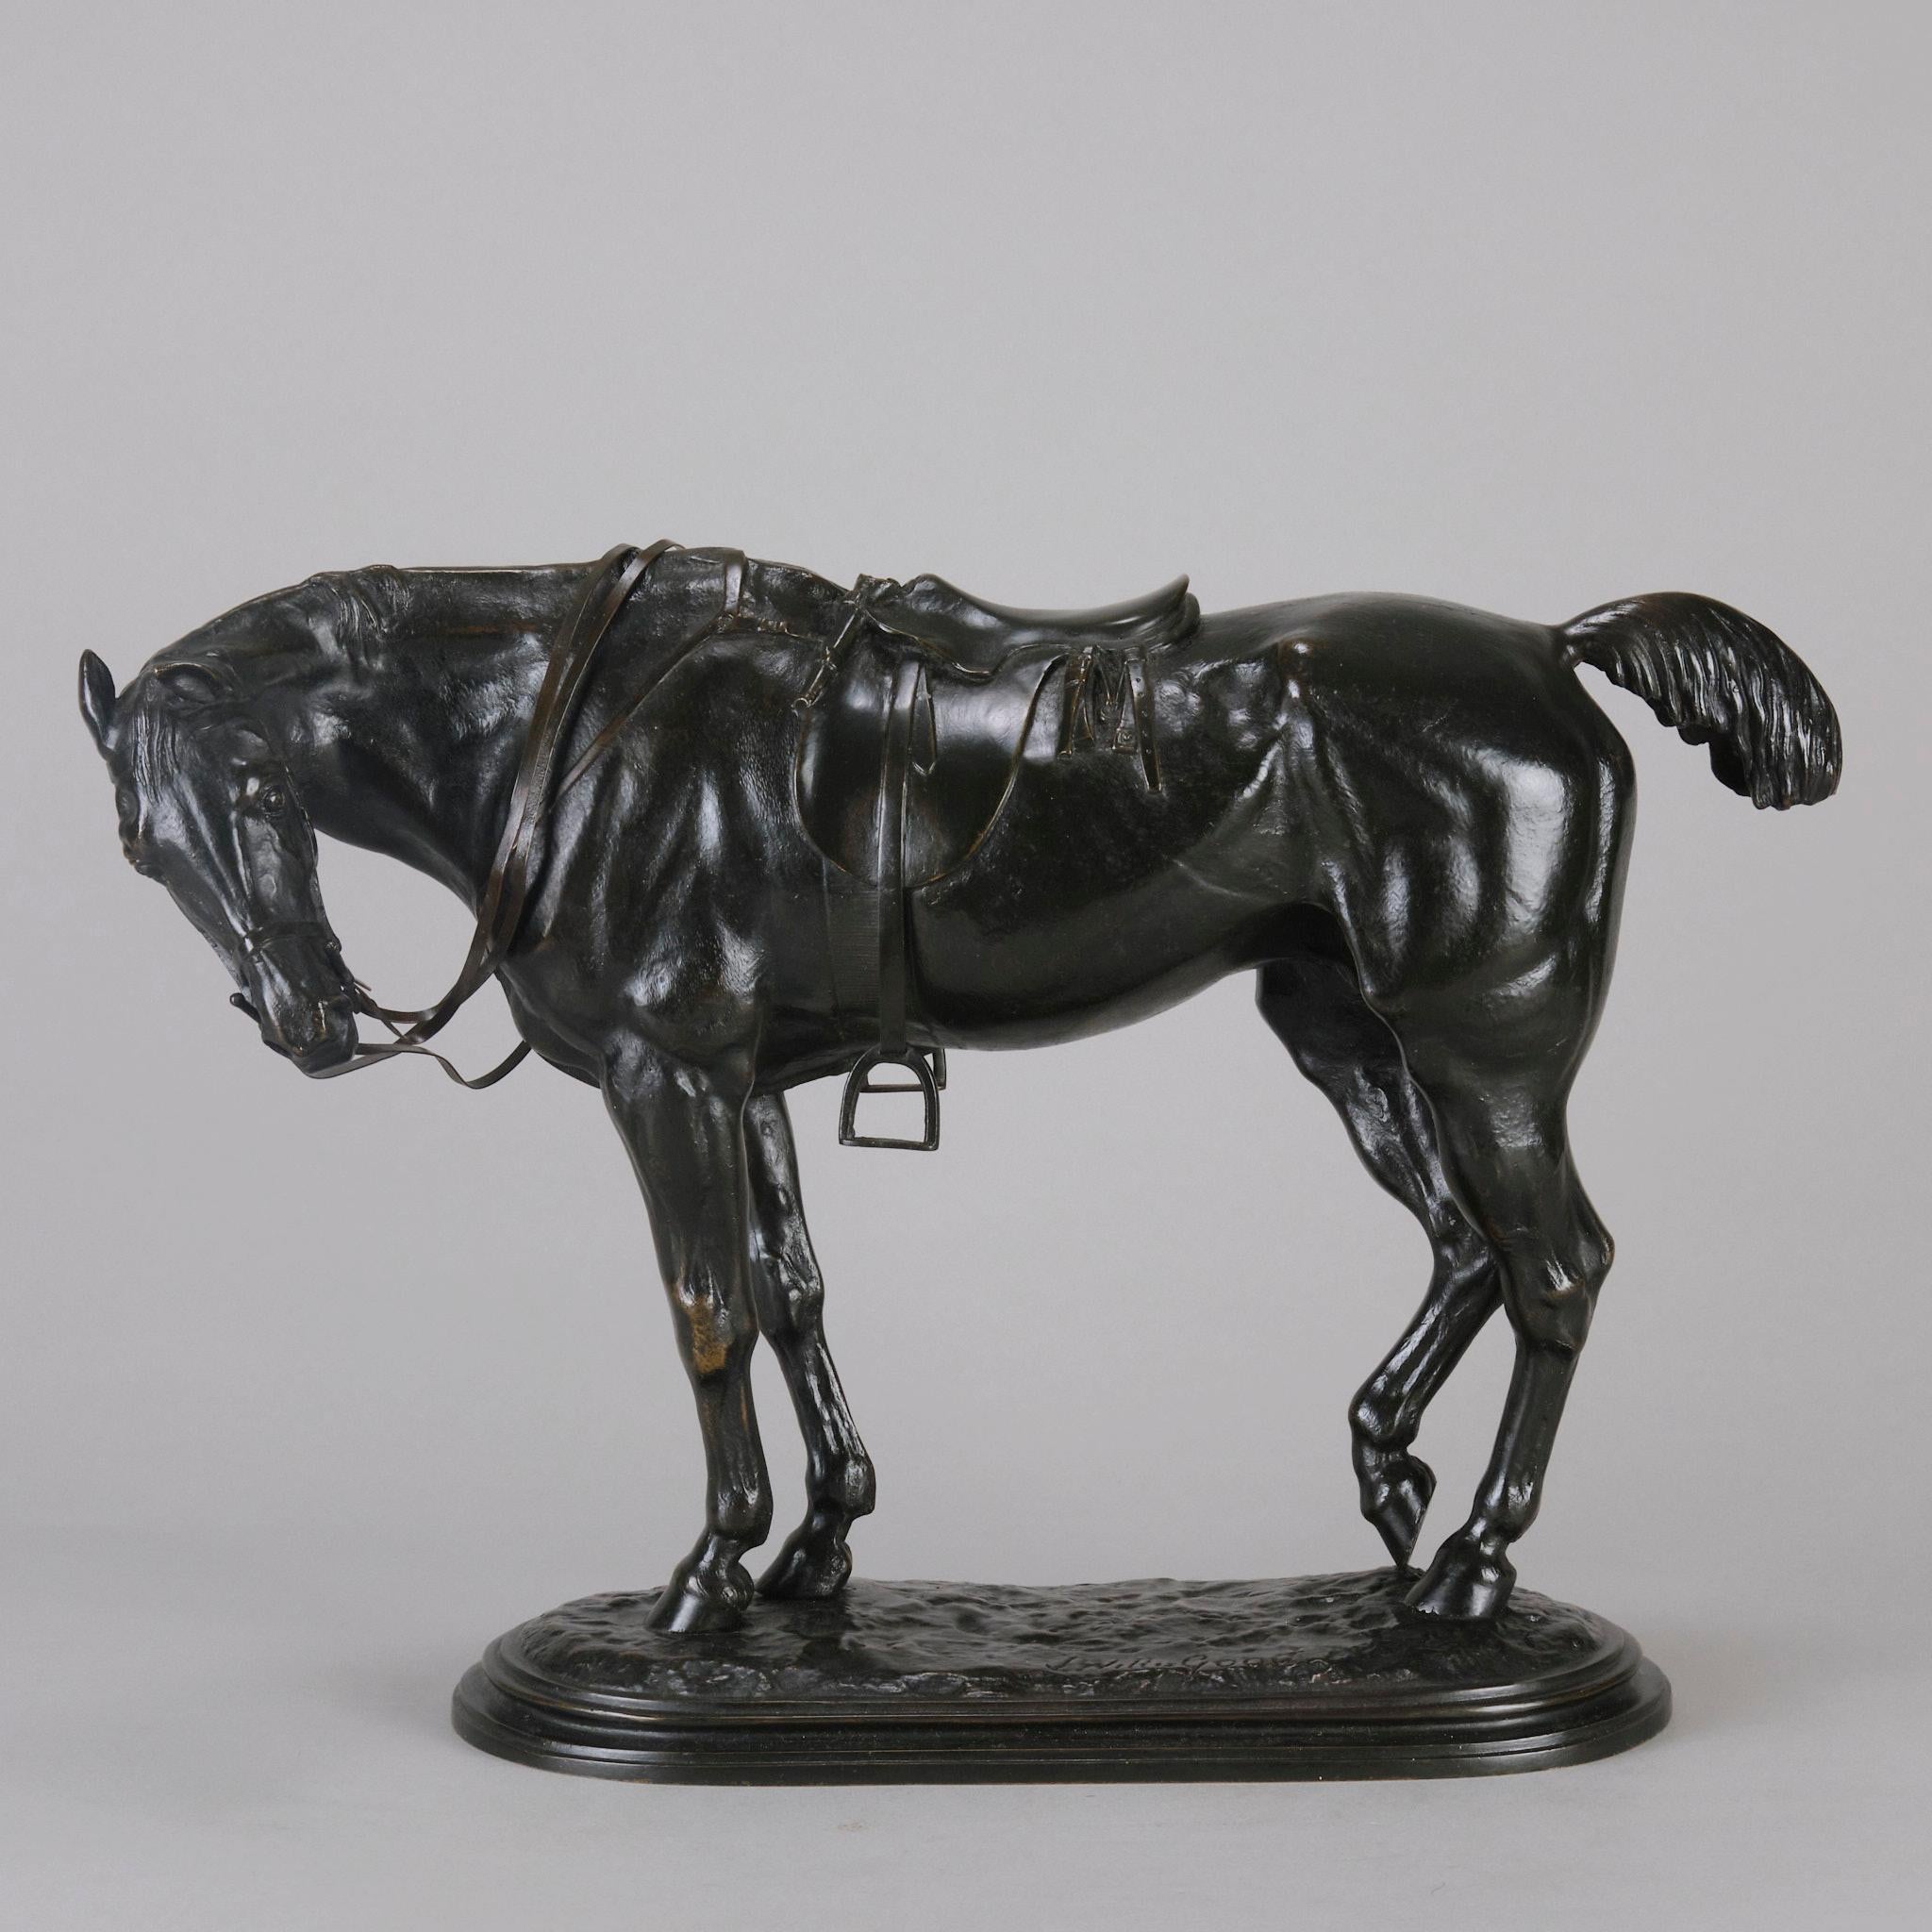 Eine ausgezeichnete Bronzestudie aus dem späten 19. Jahrhundert, die einen Jäger in voller Montur zeigt, der eine Pause einlegt, den Hals umdreht und das hintere Bein ausruht. Die Bronze weist sehr feine handziselierte Oberflächendetails und eine